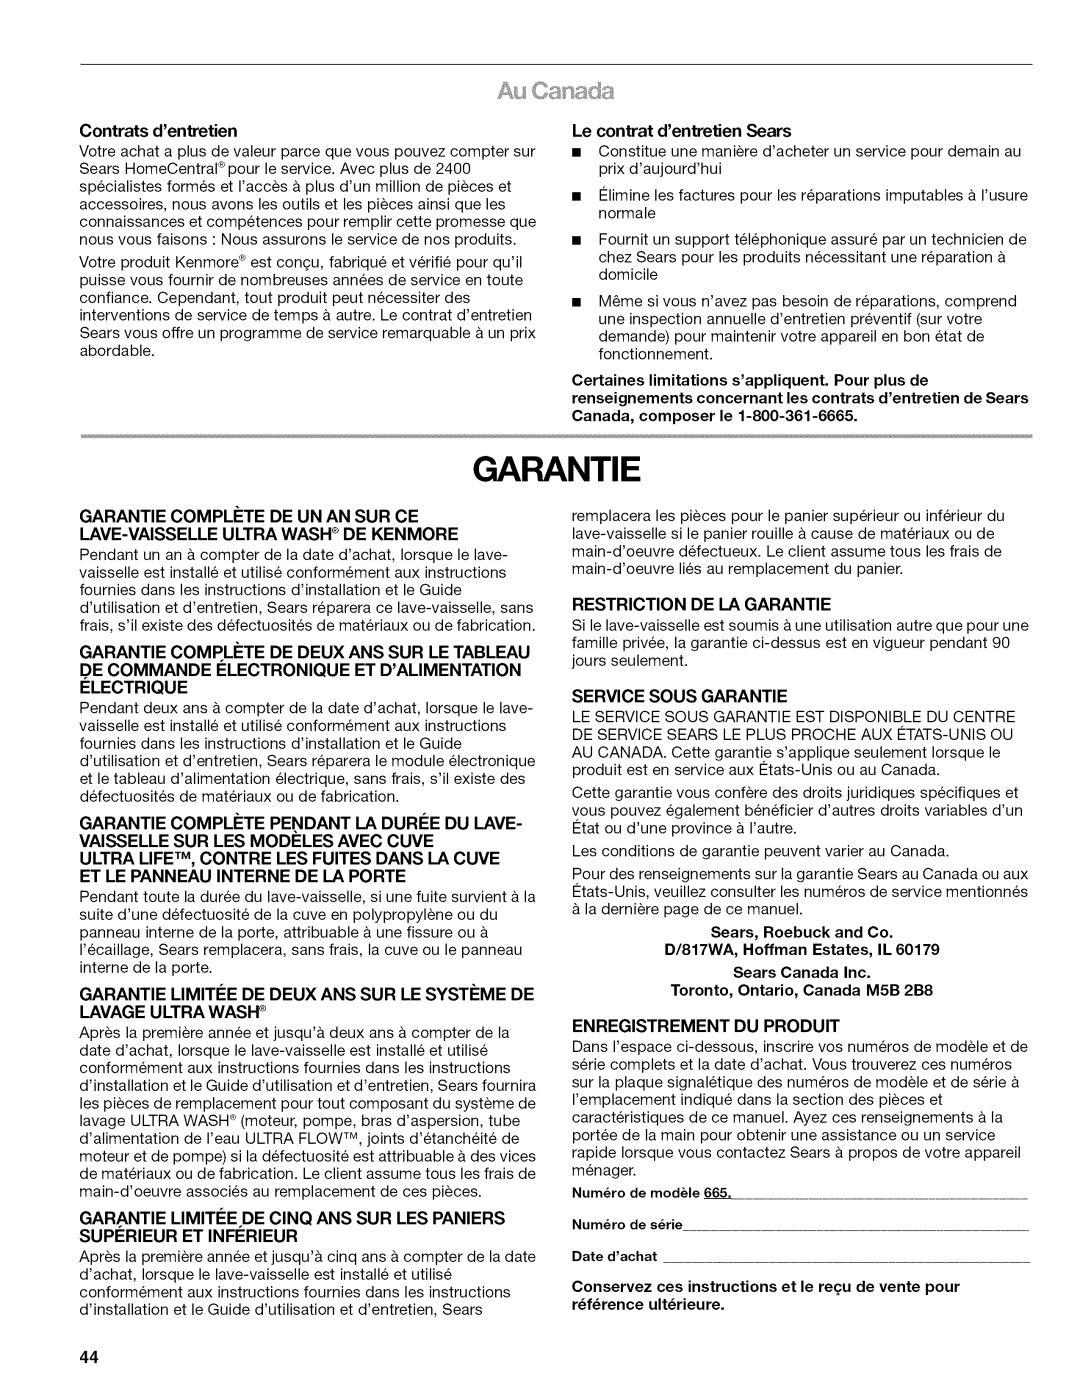 Kenmore 665.1622 manual Contrats dentretien, Le contrat dentretien Sears, Garantie Compl#Te De Deux Ans Sup Le Tableau 